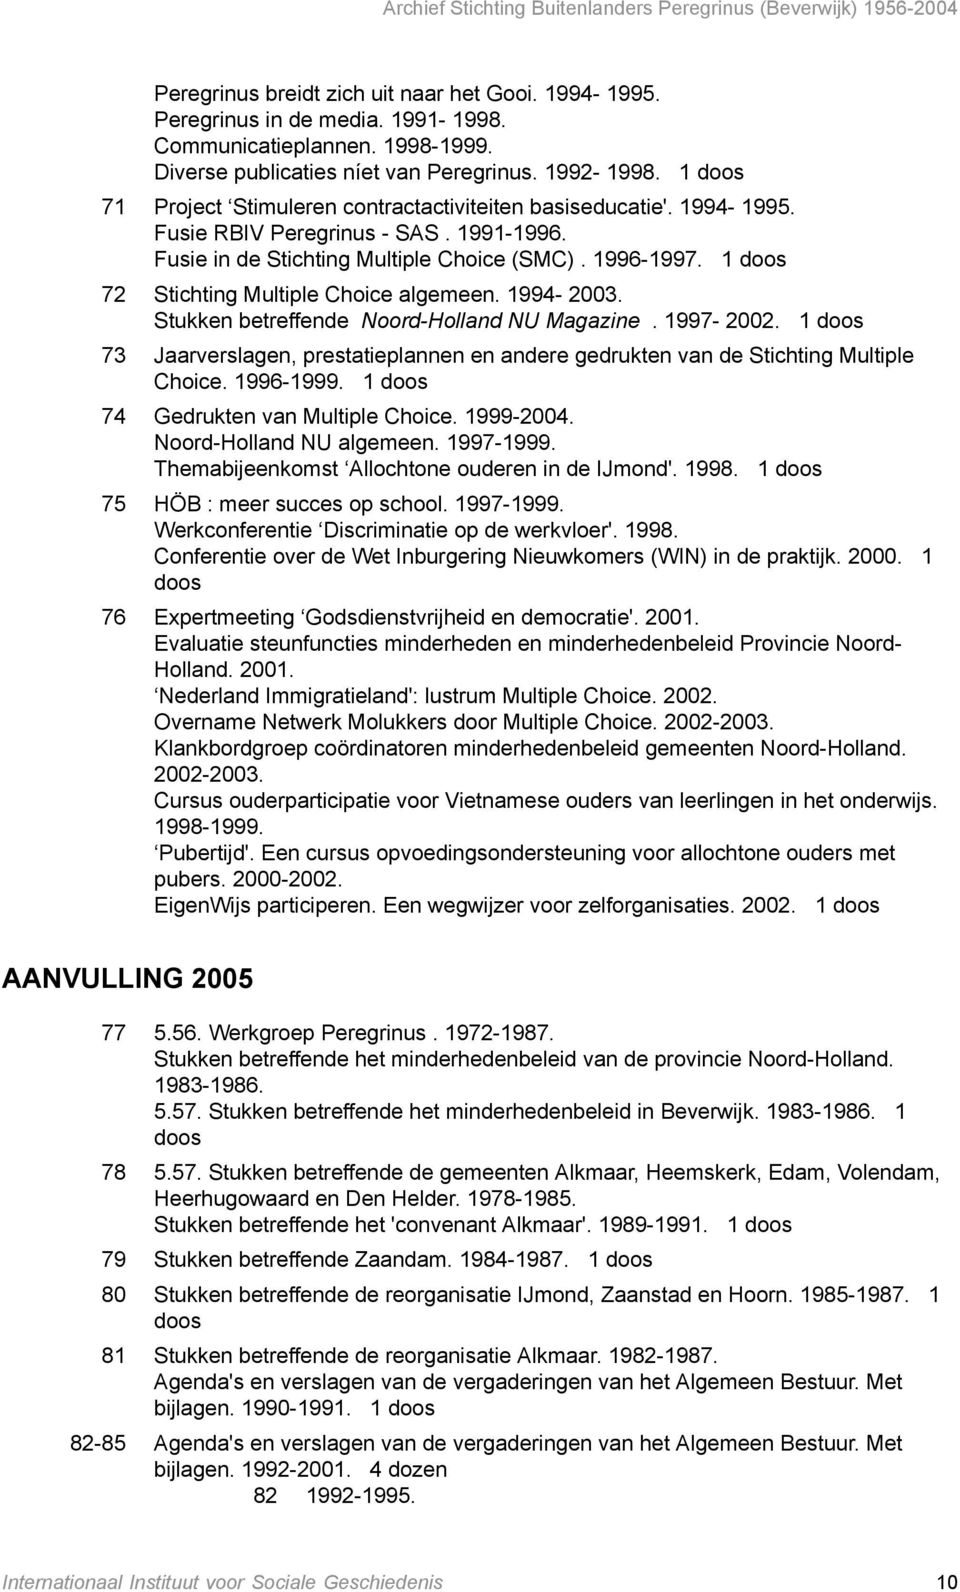 72 Stichting Multiple Choice algemeen. 1994-2003. Stukken betreffende Noord-Holland NU Magazine. 1997-2002. 73 Jaarverslagen, prestatieplannen en andere gedrukten van de Stichting Multiple Choice.